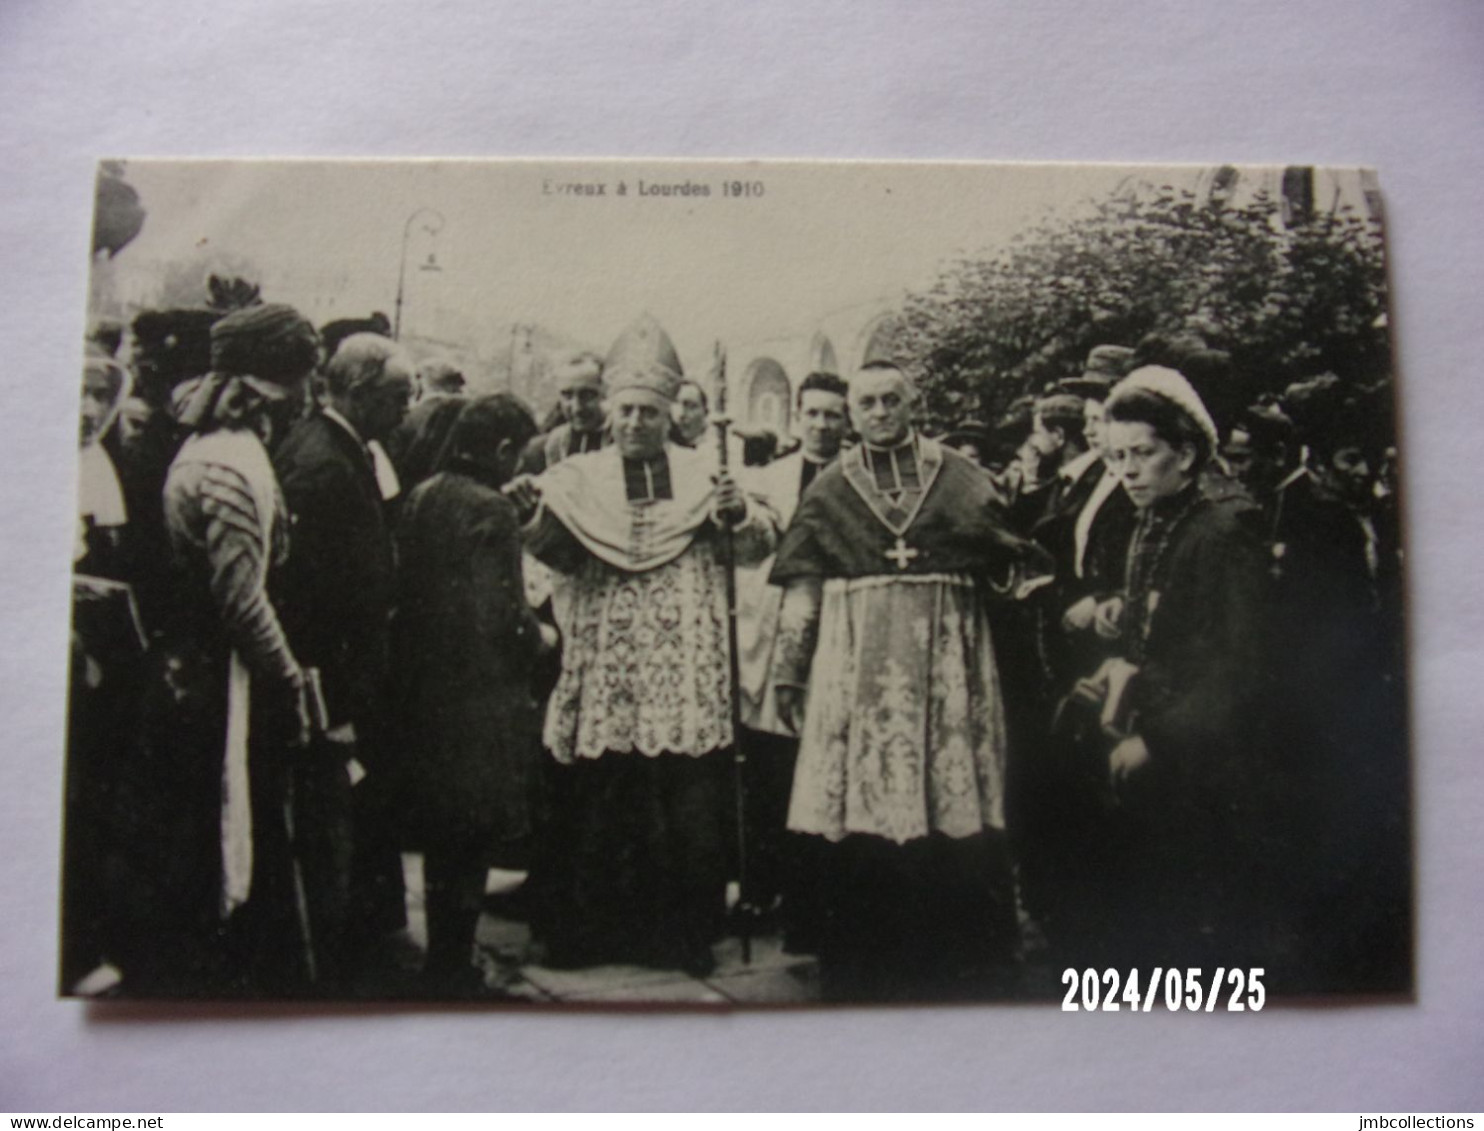 LOURDES (Haute Pyrénées) EVREUX A LOURDES 1910 LOT DE 4 CPA - Lourdes